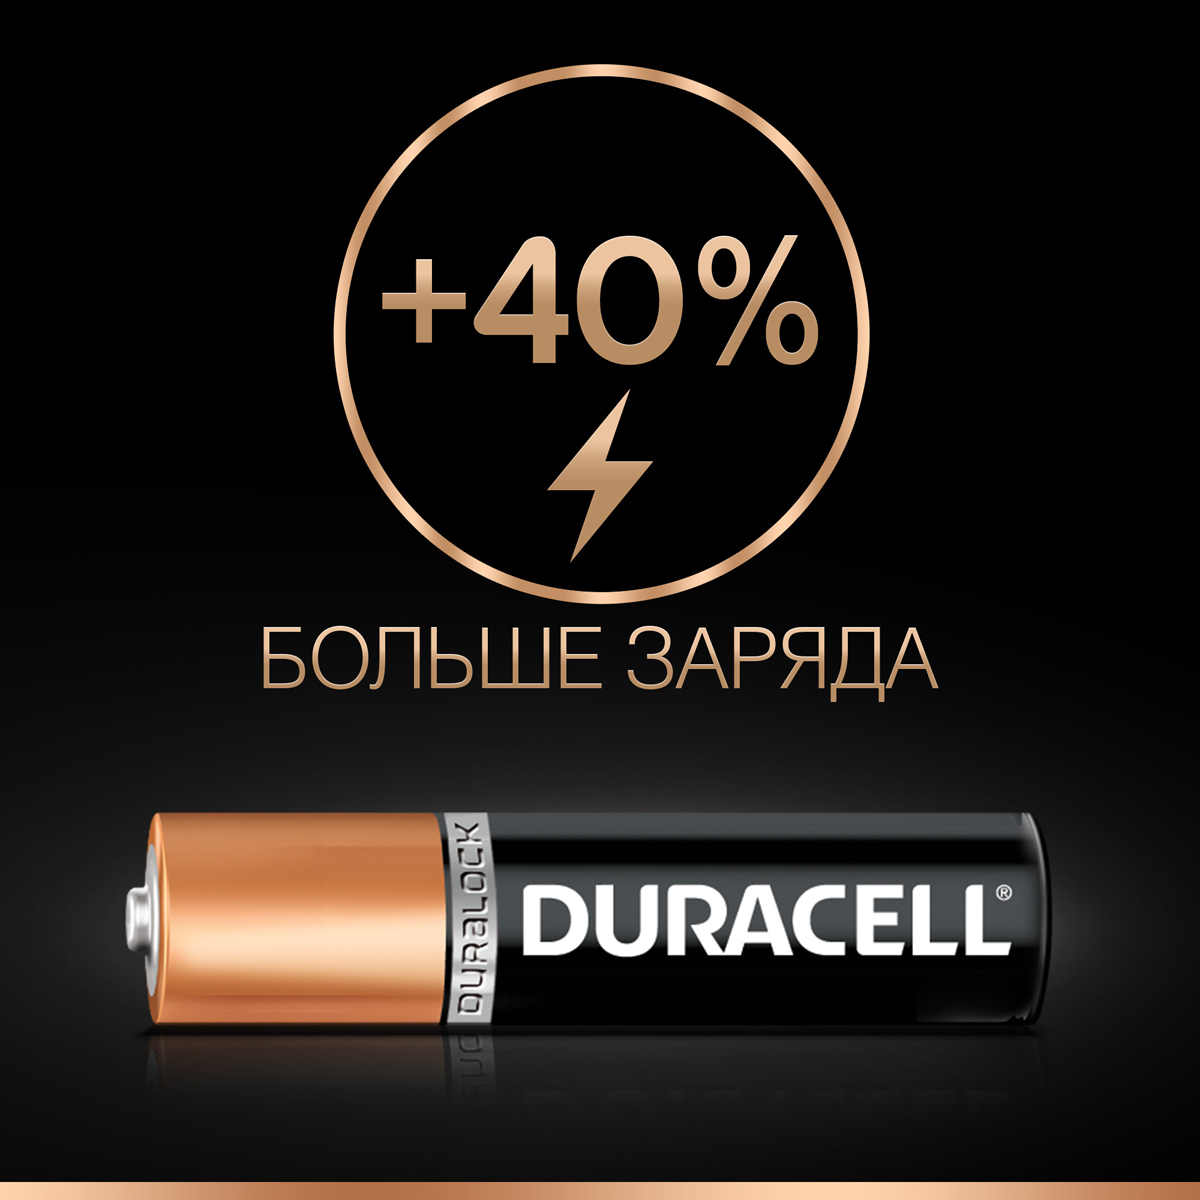 фото Набор щелочных батареек Duracell Basic, тип AAA, 8 шт